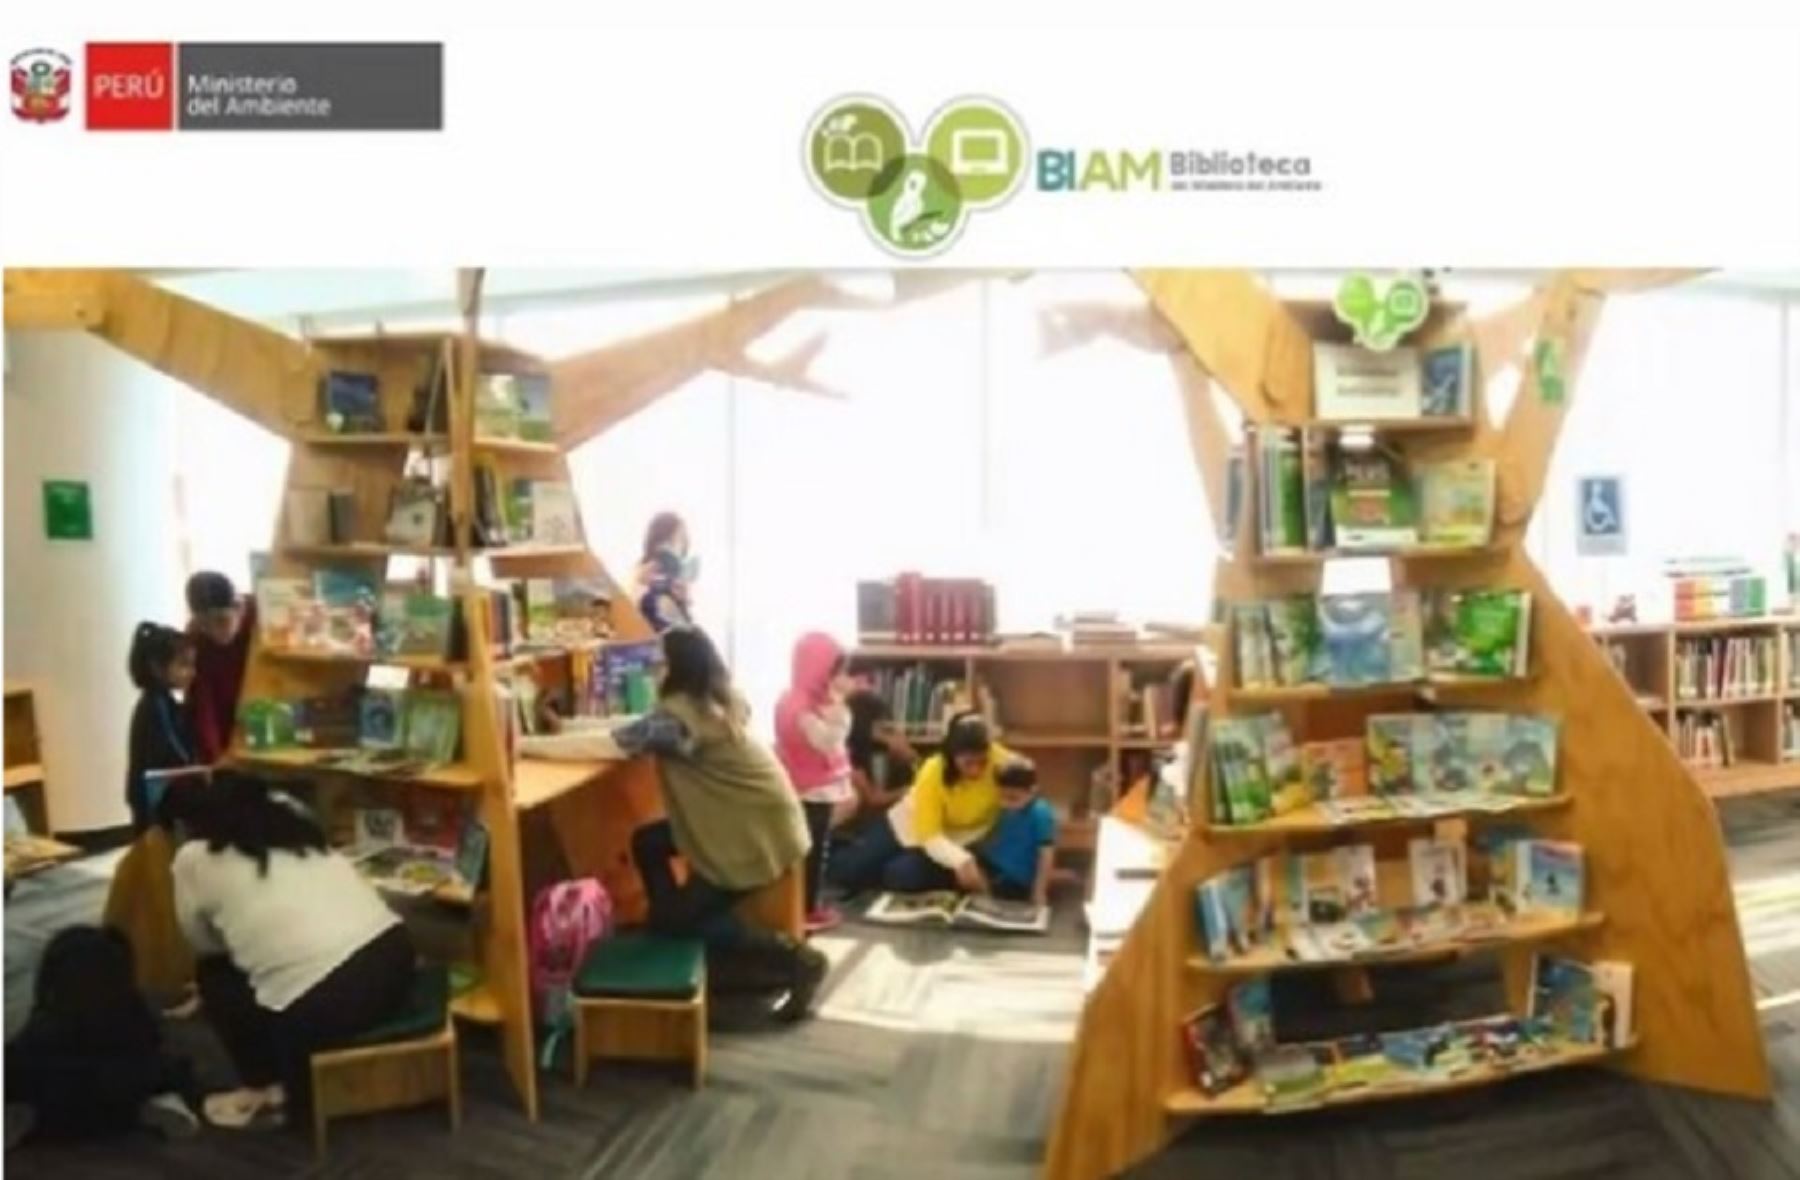 La Biblioteca Ambiental (BIAM) del Ministerio del Ambiente (Minam), desde abril del 2020, ha fortalecido la virtualización de sus servicios, productos y actividades dirigidas a la ciudadanía.